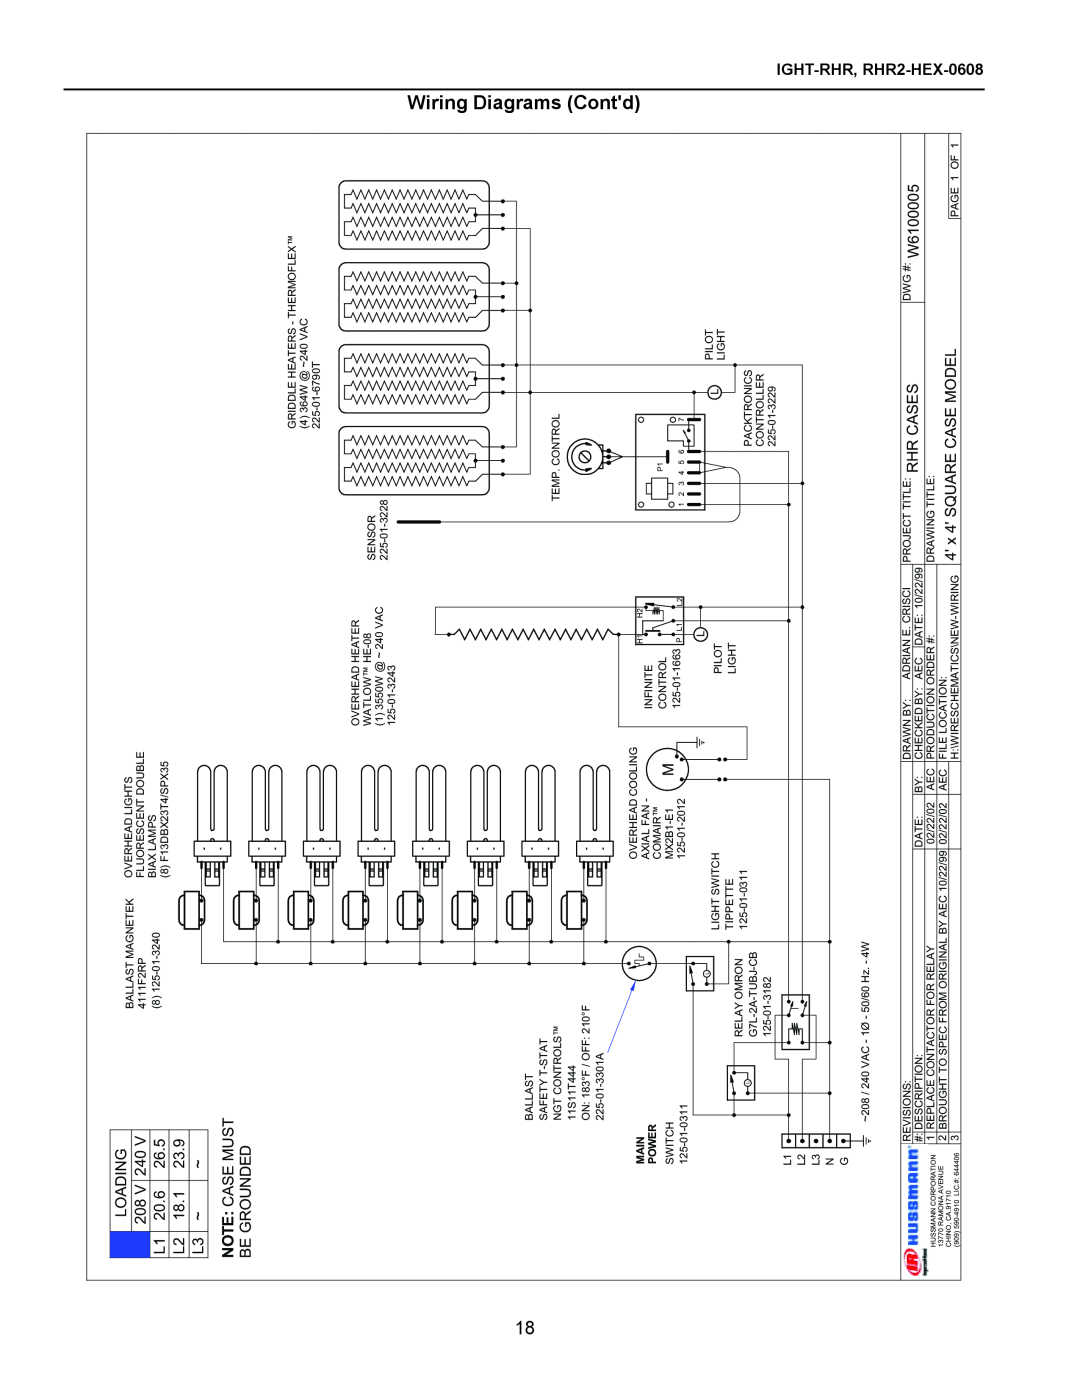 hussman rhr-hex, RHR-SQ, RHR 1/2 HEX operation manual Wiring Diagrams Contd, Loading, IGHT-RHR, RHR2-HEX-0608 